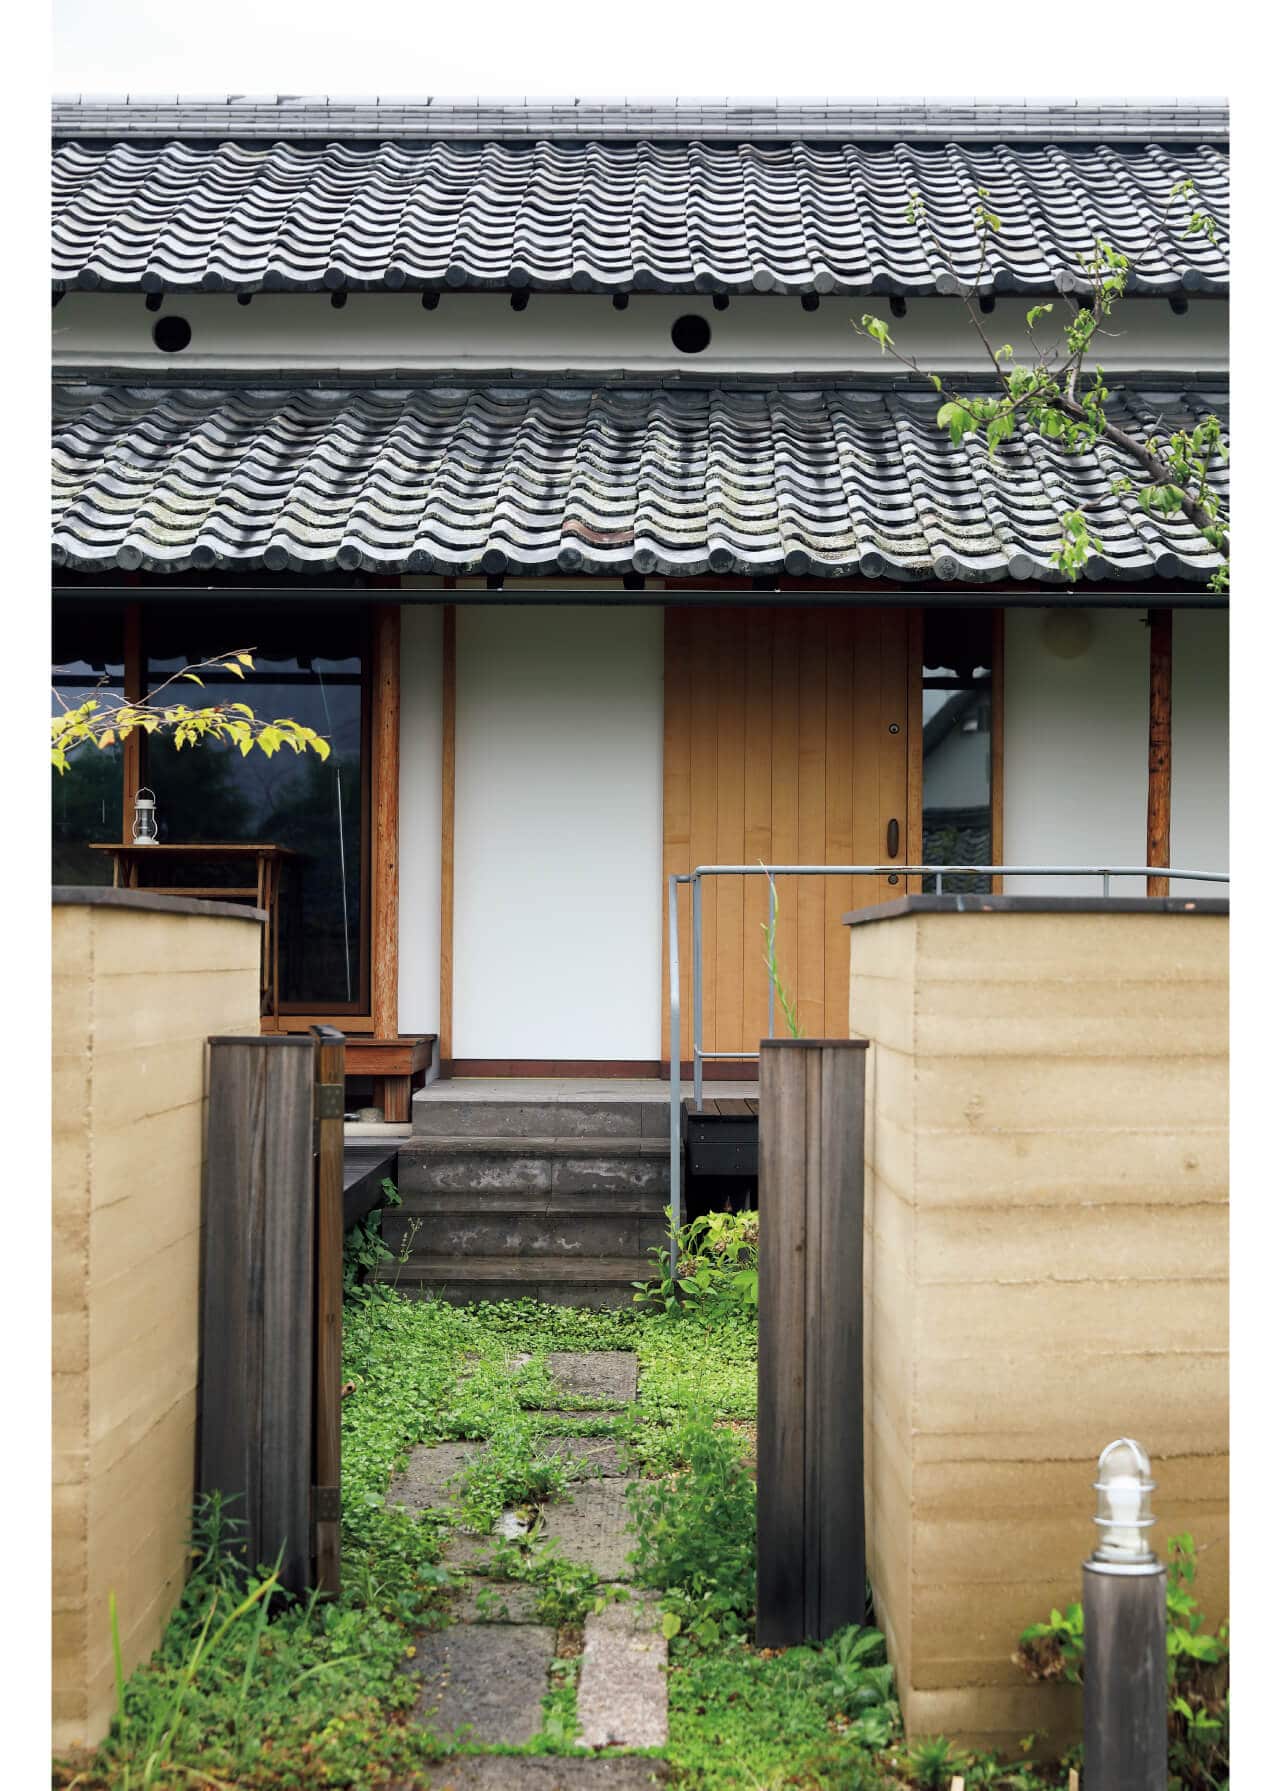 石村さんの道具選びは、「人を喜ばせるもの」「幸せをもたらしてくれるもの」。そういう意味で、石村さんにとって家は、いちばん大きな「幸せな道具」なのかもしれません。